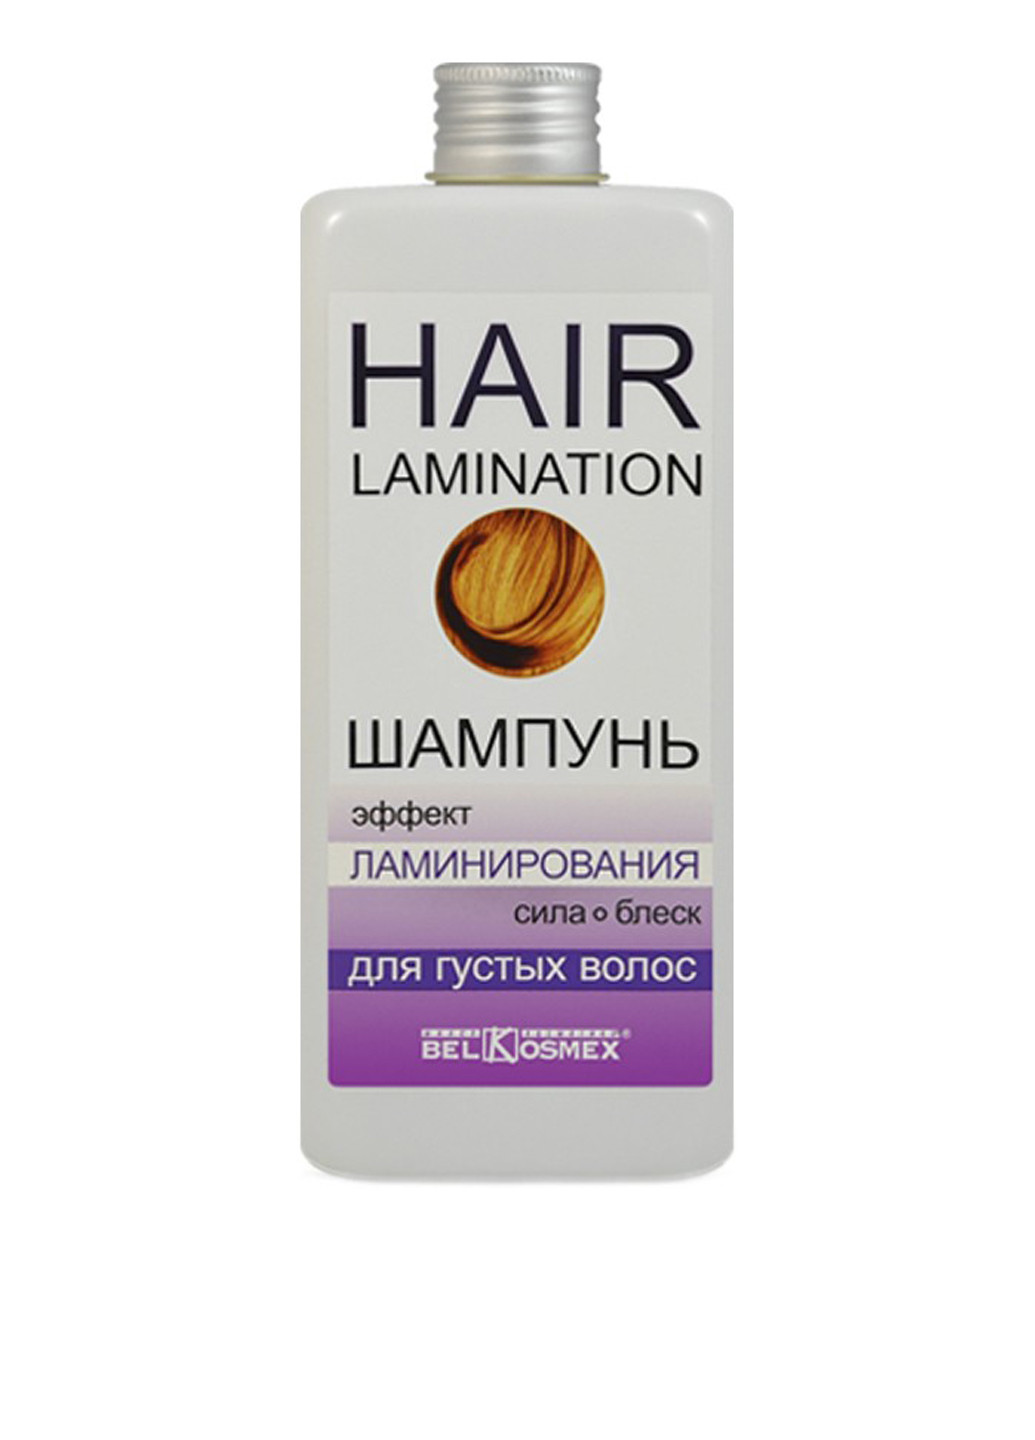 Шампунь с эффектом ламинирования для густых волос, 230 г BelKosmex (75100887)